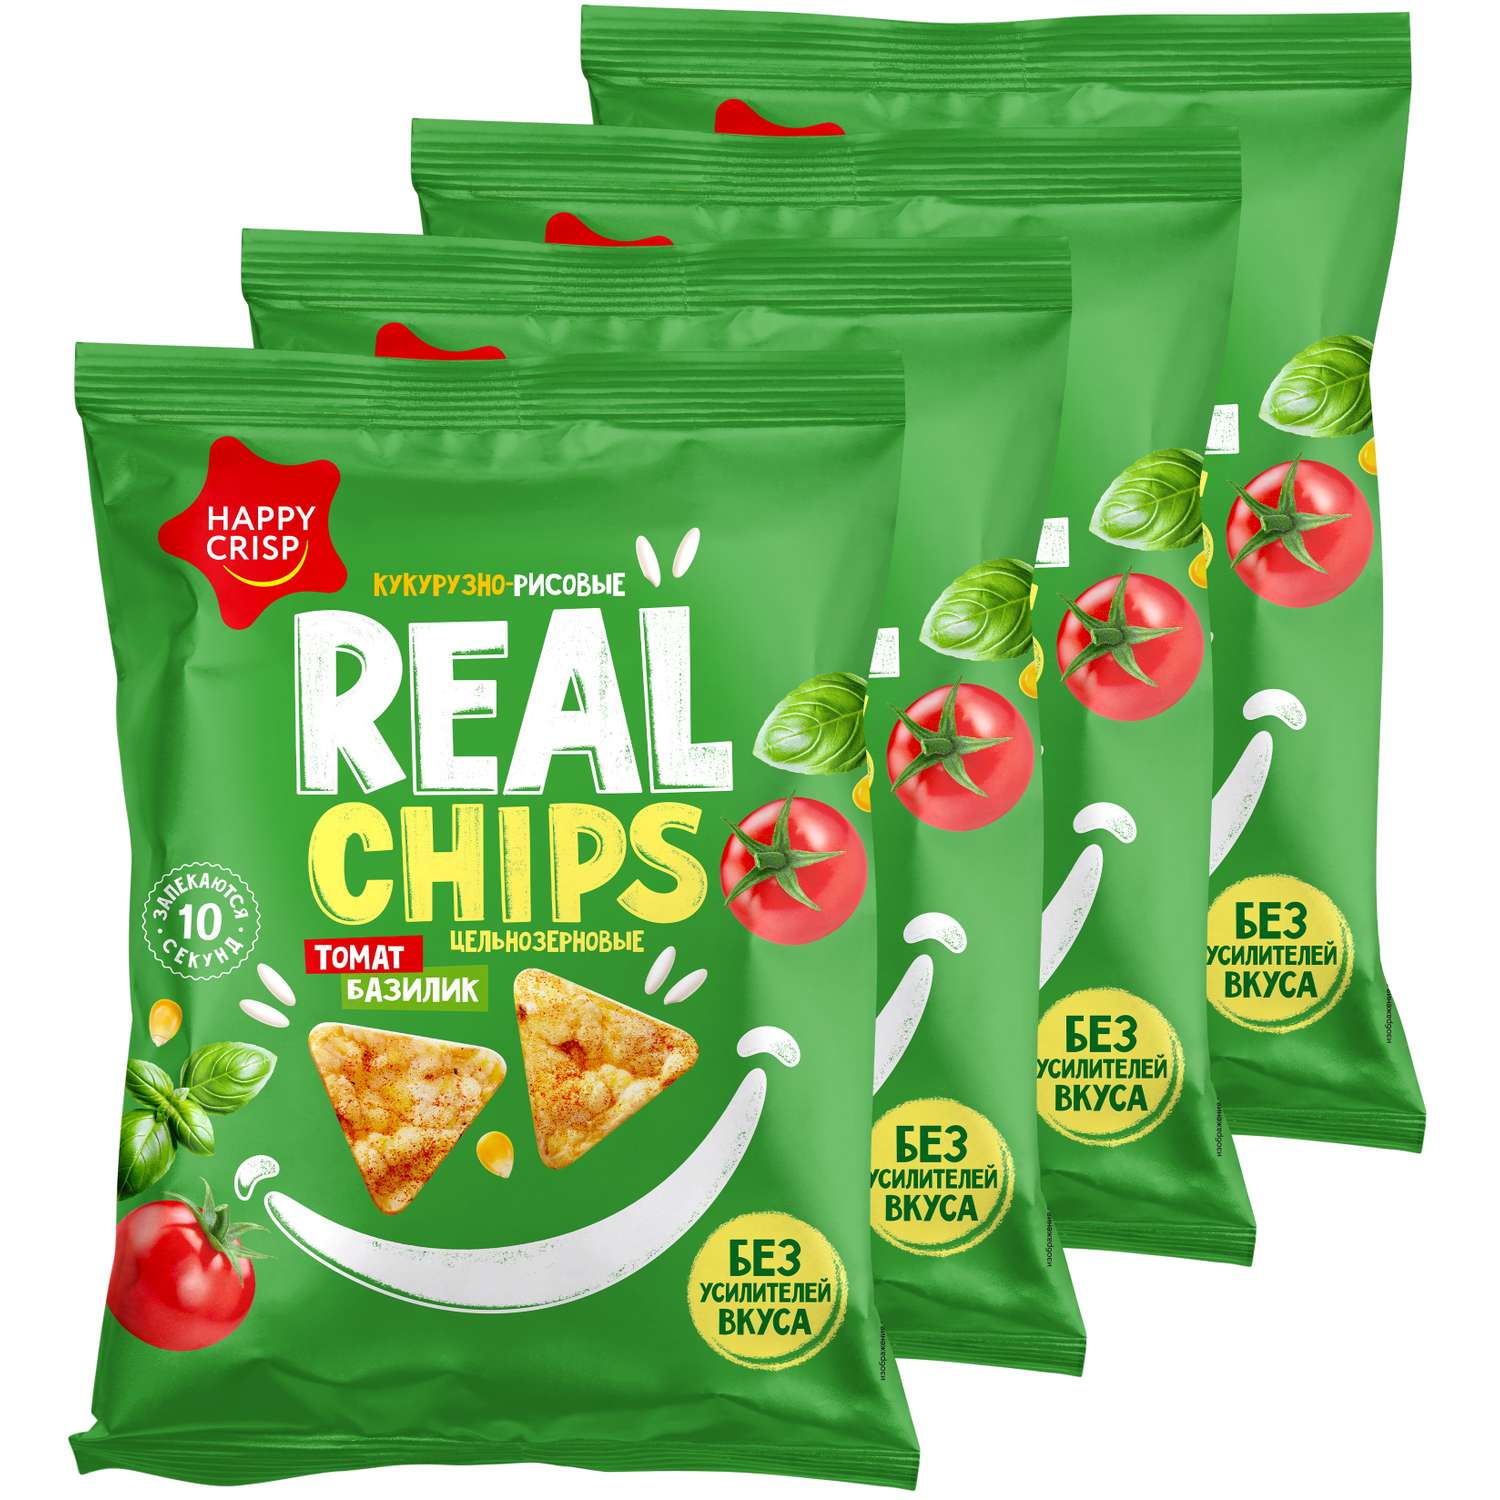 Чипсы цельнозерновые Happy Crisp кукурузно-рисовые Real Chips томат и базилик 4 шт по 50 г - фото 1